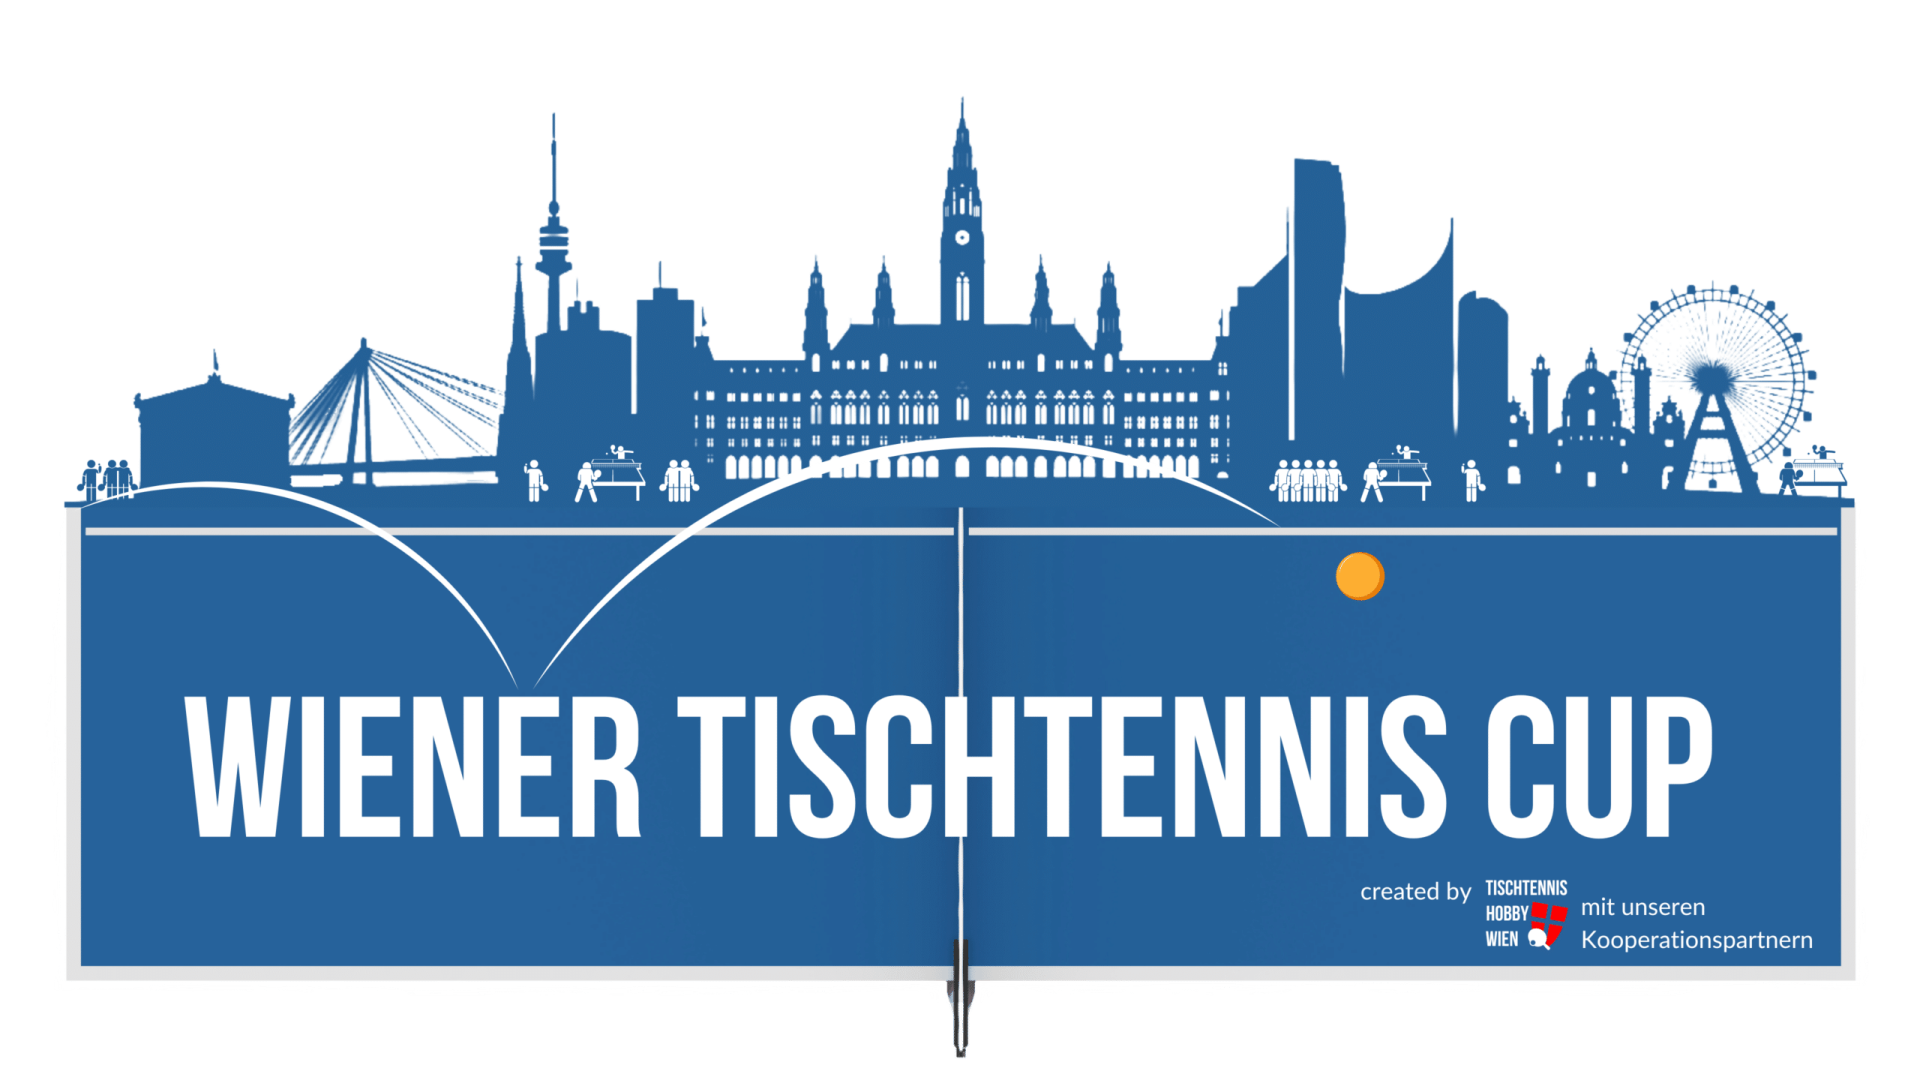 Der Wiener Tischtennis Cup soll die Wiener Tischtennis Community noch näher zusammen bringen. Tauche ein in spannende Matches in der Halle und im Park, und messe dein Können mit den Besten der Wiener Tischtennisszene.